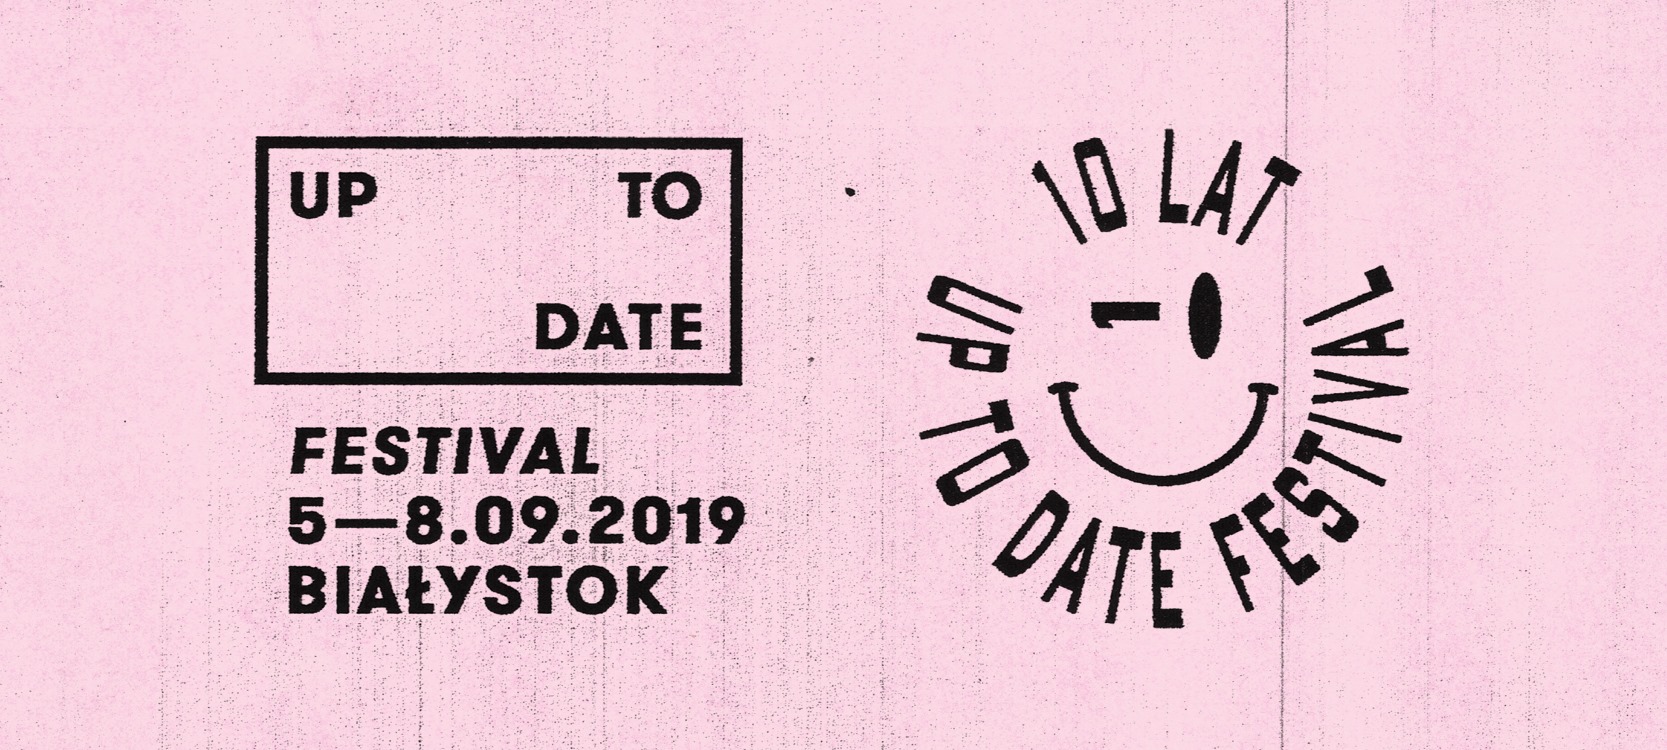 Nadchodzi 10. odsłona Up To Date Festival